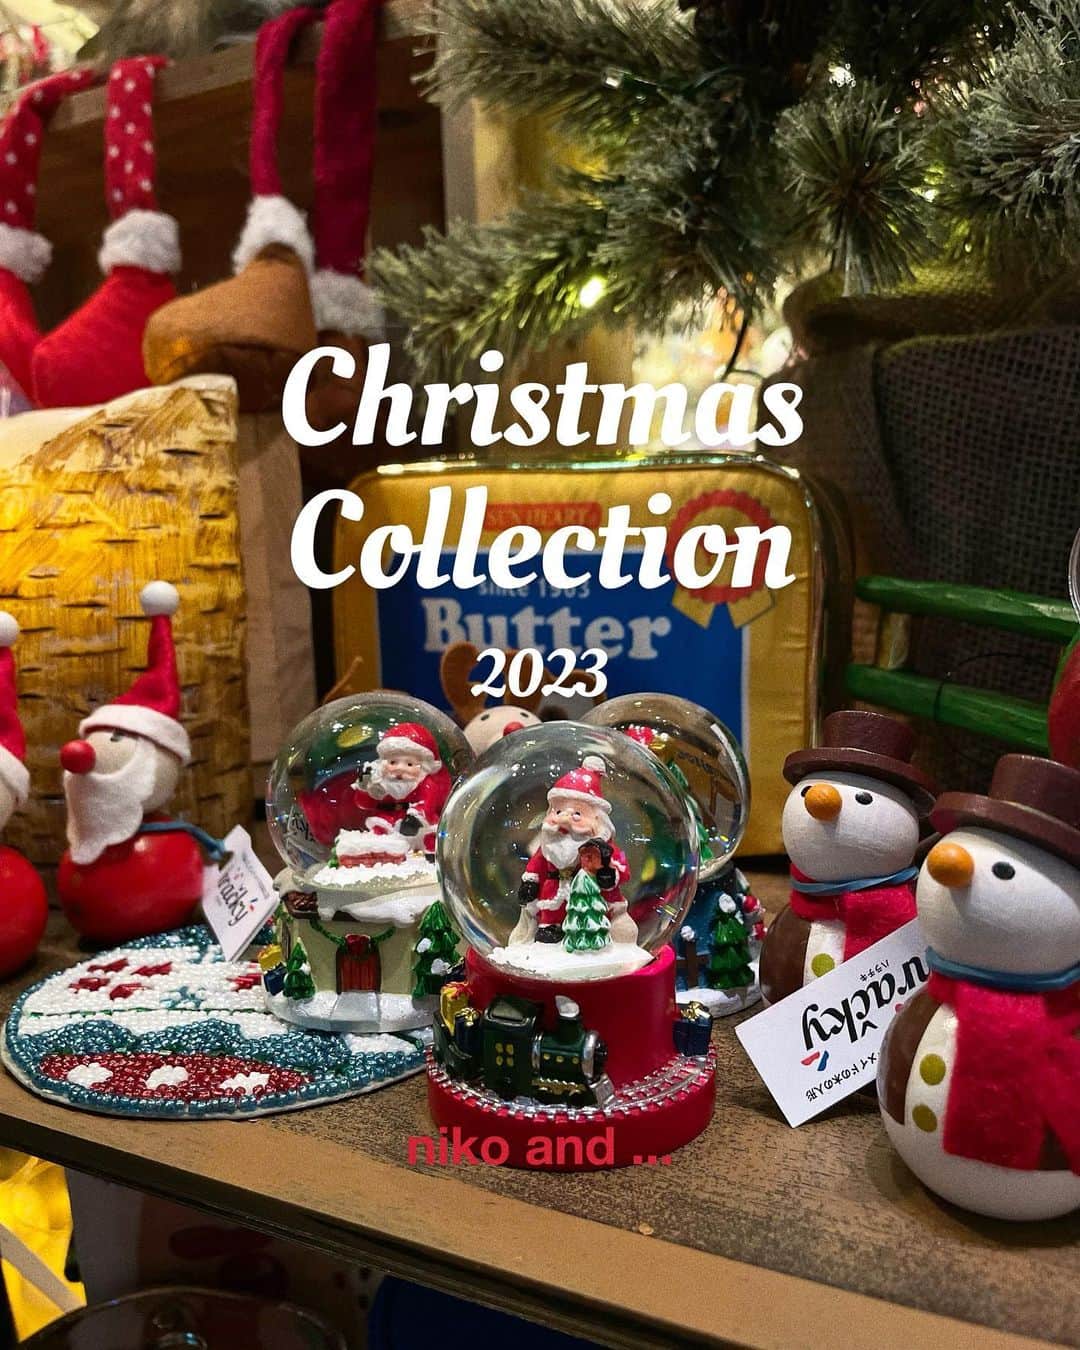 ニコアンドのインスタグラム：「Christmas Collection 2023 💫  いよいよこの季節がやって来ました  毎年人気のニコアンドクリスマスがスタート！  今年はアメリカンビンテージ調のアイテムを数多くご用意✨  ぜひ店頭で一足早いクリスマスを🎄  ご不明点がございましたら、 DMにてお気軽にお問い合わせくださいませ！  ご来店お待ちしております！  #ニコトーキョーzakka  @nikoandtokyo  ーーーーーーーーーーーーーーーー 　　 　　OPEN 11:00 CLOSE 21:00  ーーーーーーーーーーーーーーーー  #nikoand #nikoandtokyo #ニコアンド #ニコアンド雑貨 #クリスマス #クリスマスツリー #クリスマスリース #クリスマスプレゼント #オーナメント #アメリカン #アメリカン雑貨 #おすすめ雑貨 #生活雑貨 #インテリア #インテリアコーディネート #インテリア小物 #雑貨屋さん巡り #東京雑貨屋 #クリスマスデート #クリスマスデートスポット #christmas #christmasdecor #christmastime #christmasdecorations #christmasmood #japantravel #tokyo #tokyochristmas #japanchristmas」